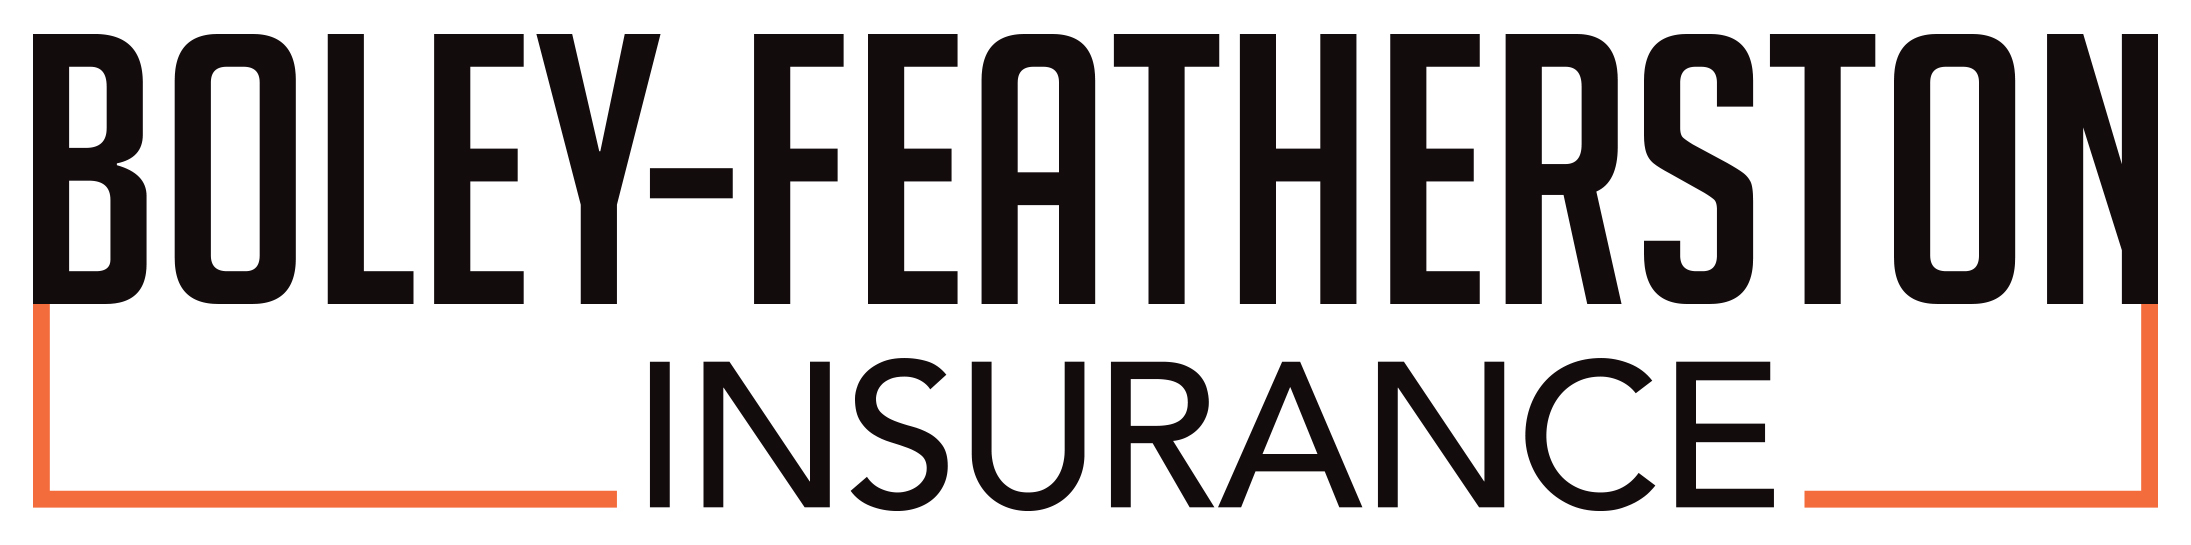 Boley-Featherston Insurance